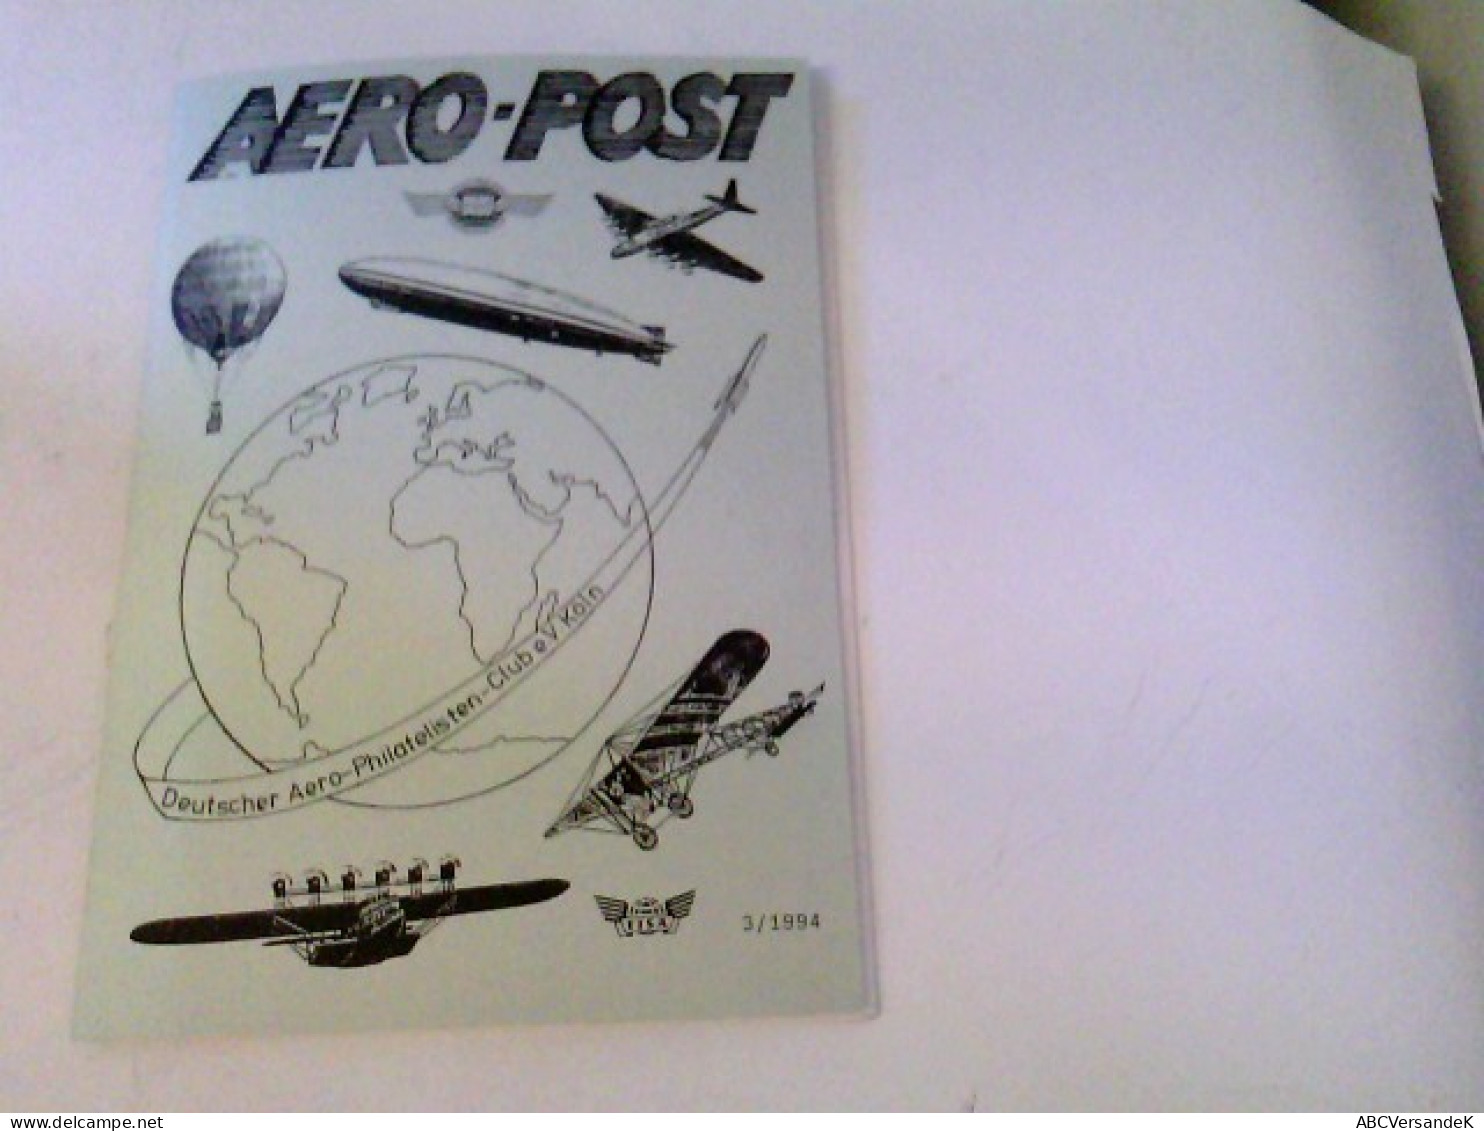 AERO-POST 3/1994 Mitteilungsblatt - Transporte